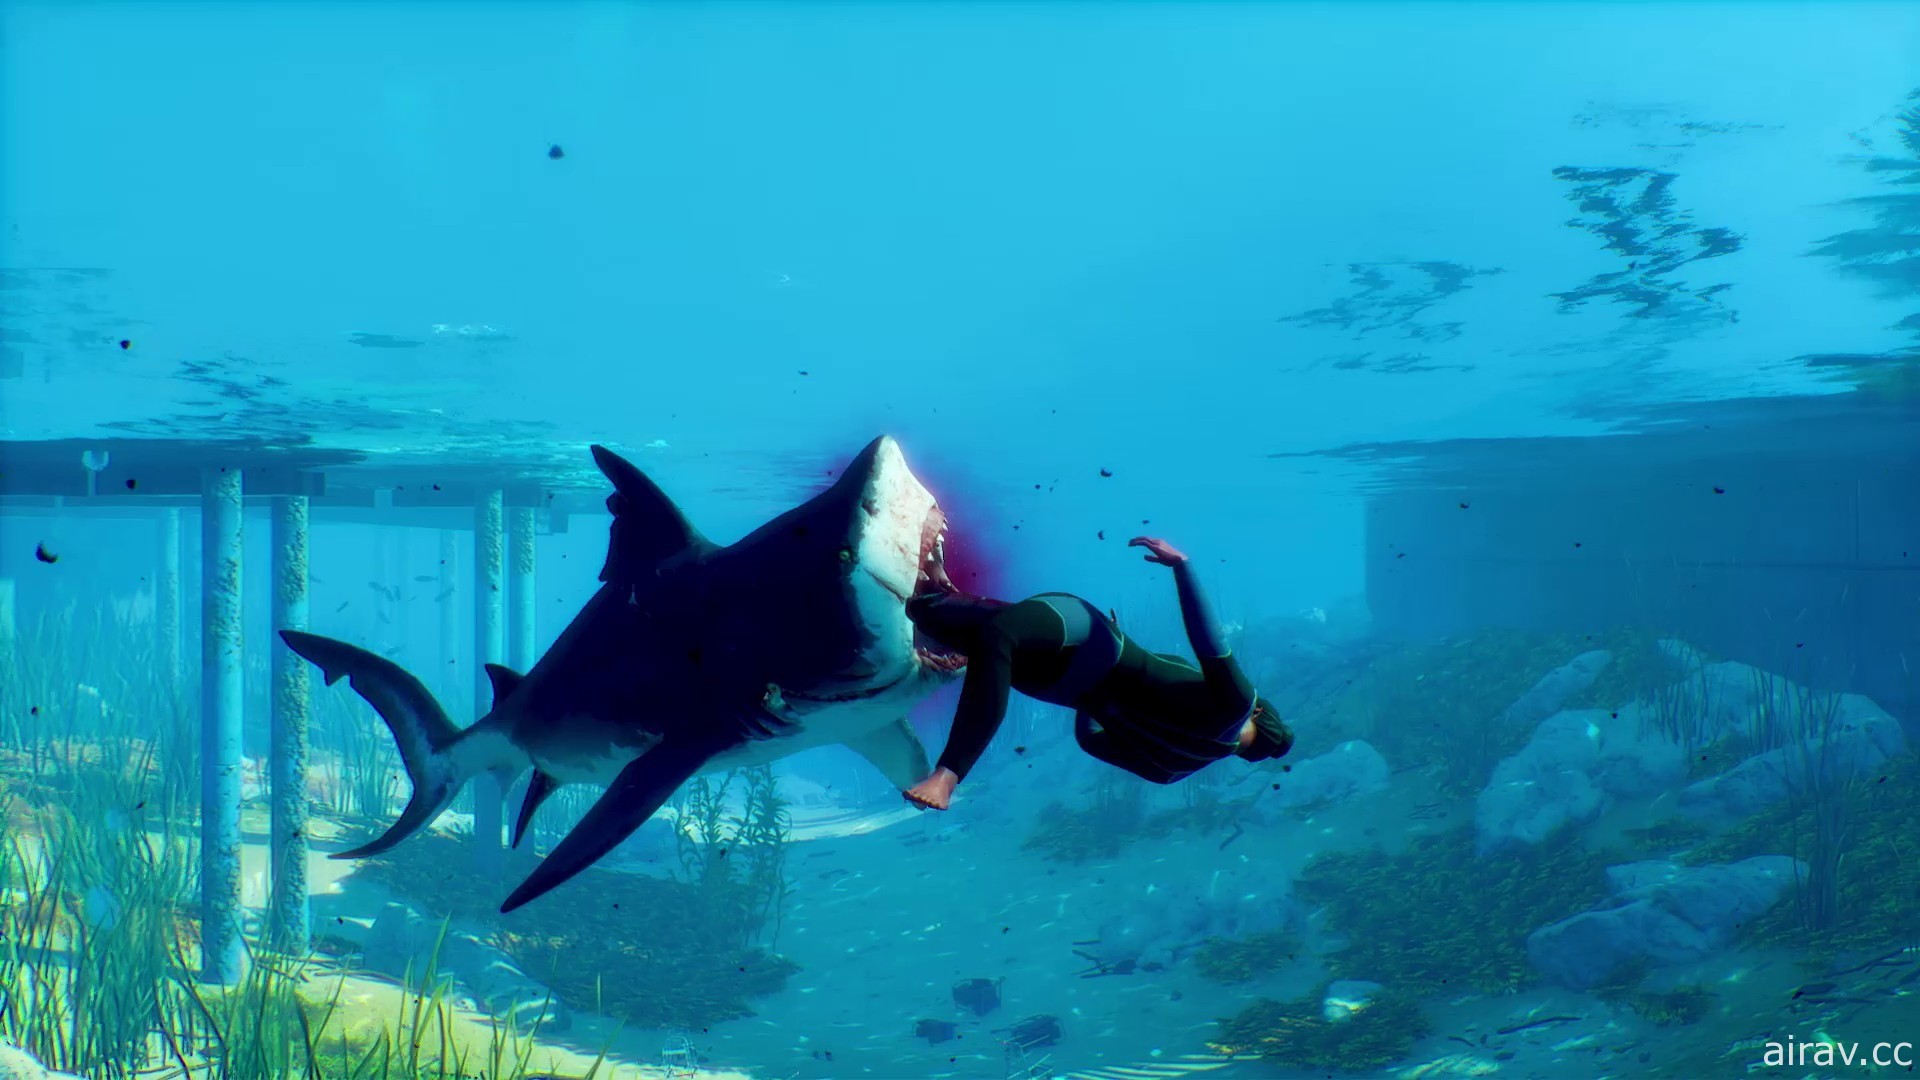 《食人鯊 Maneater》繁體中文版即將登陸 PS5 / PS4 / NS 平台